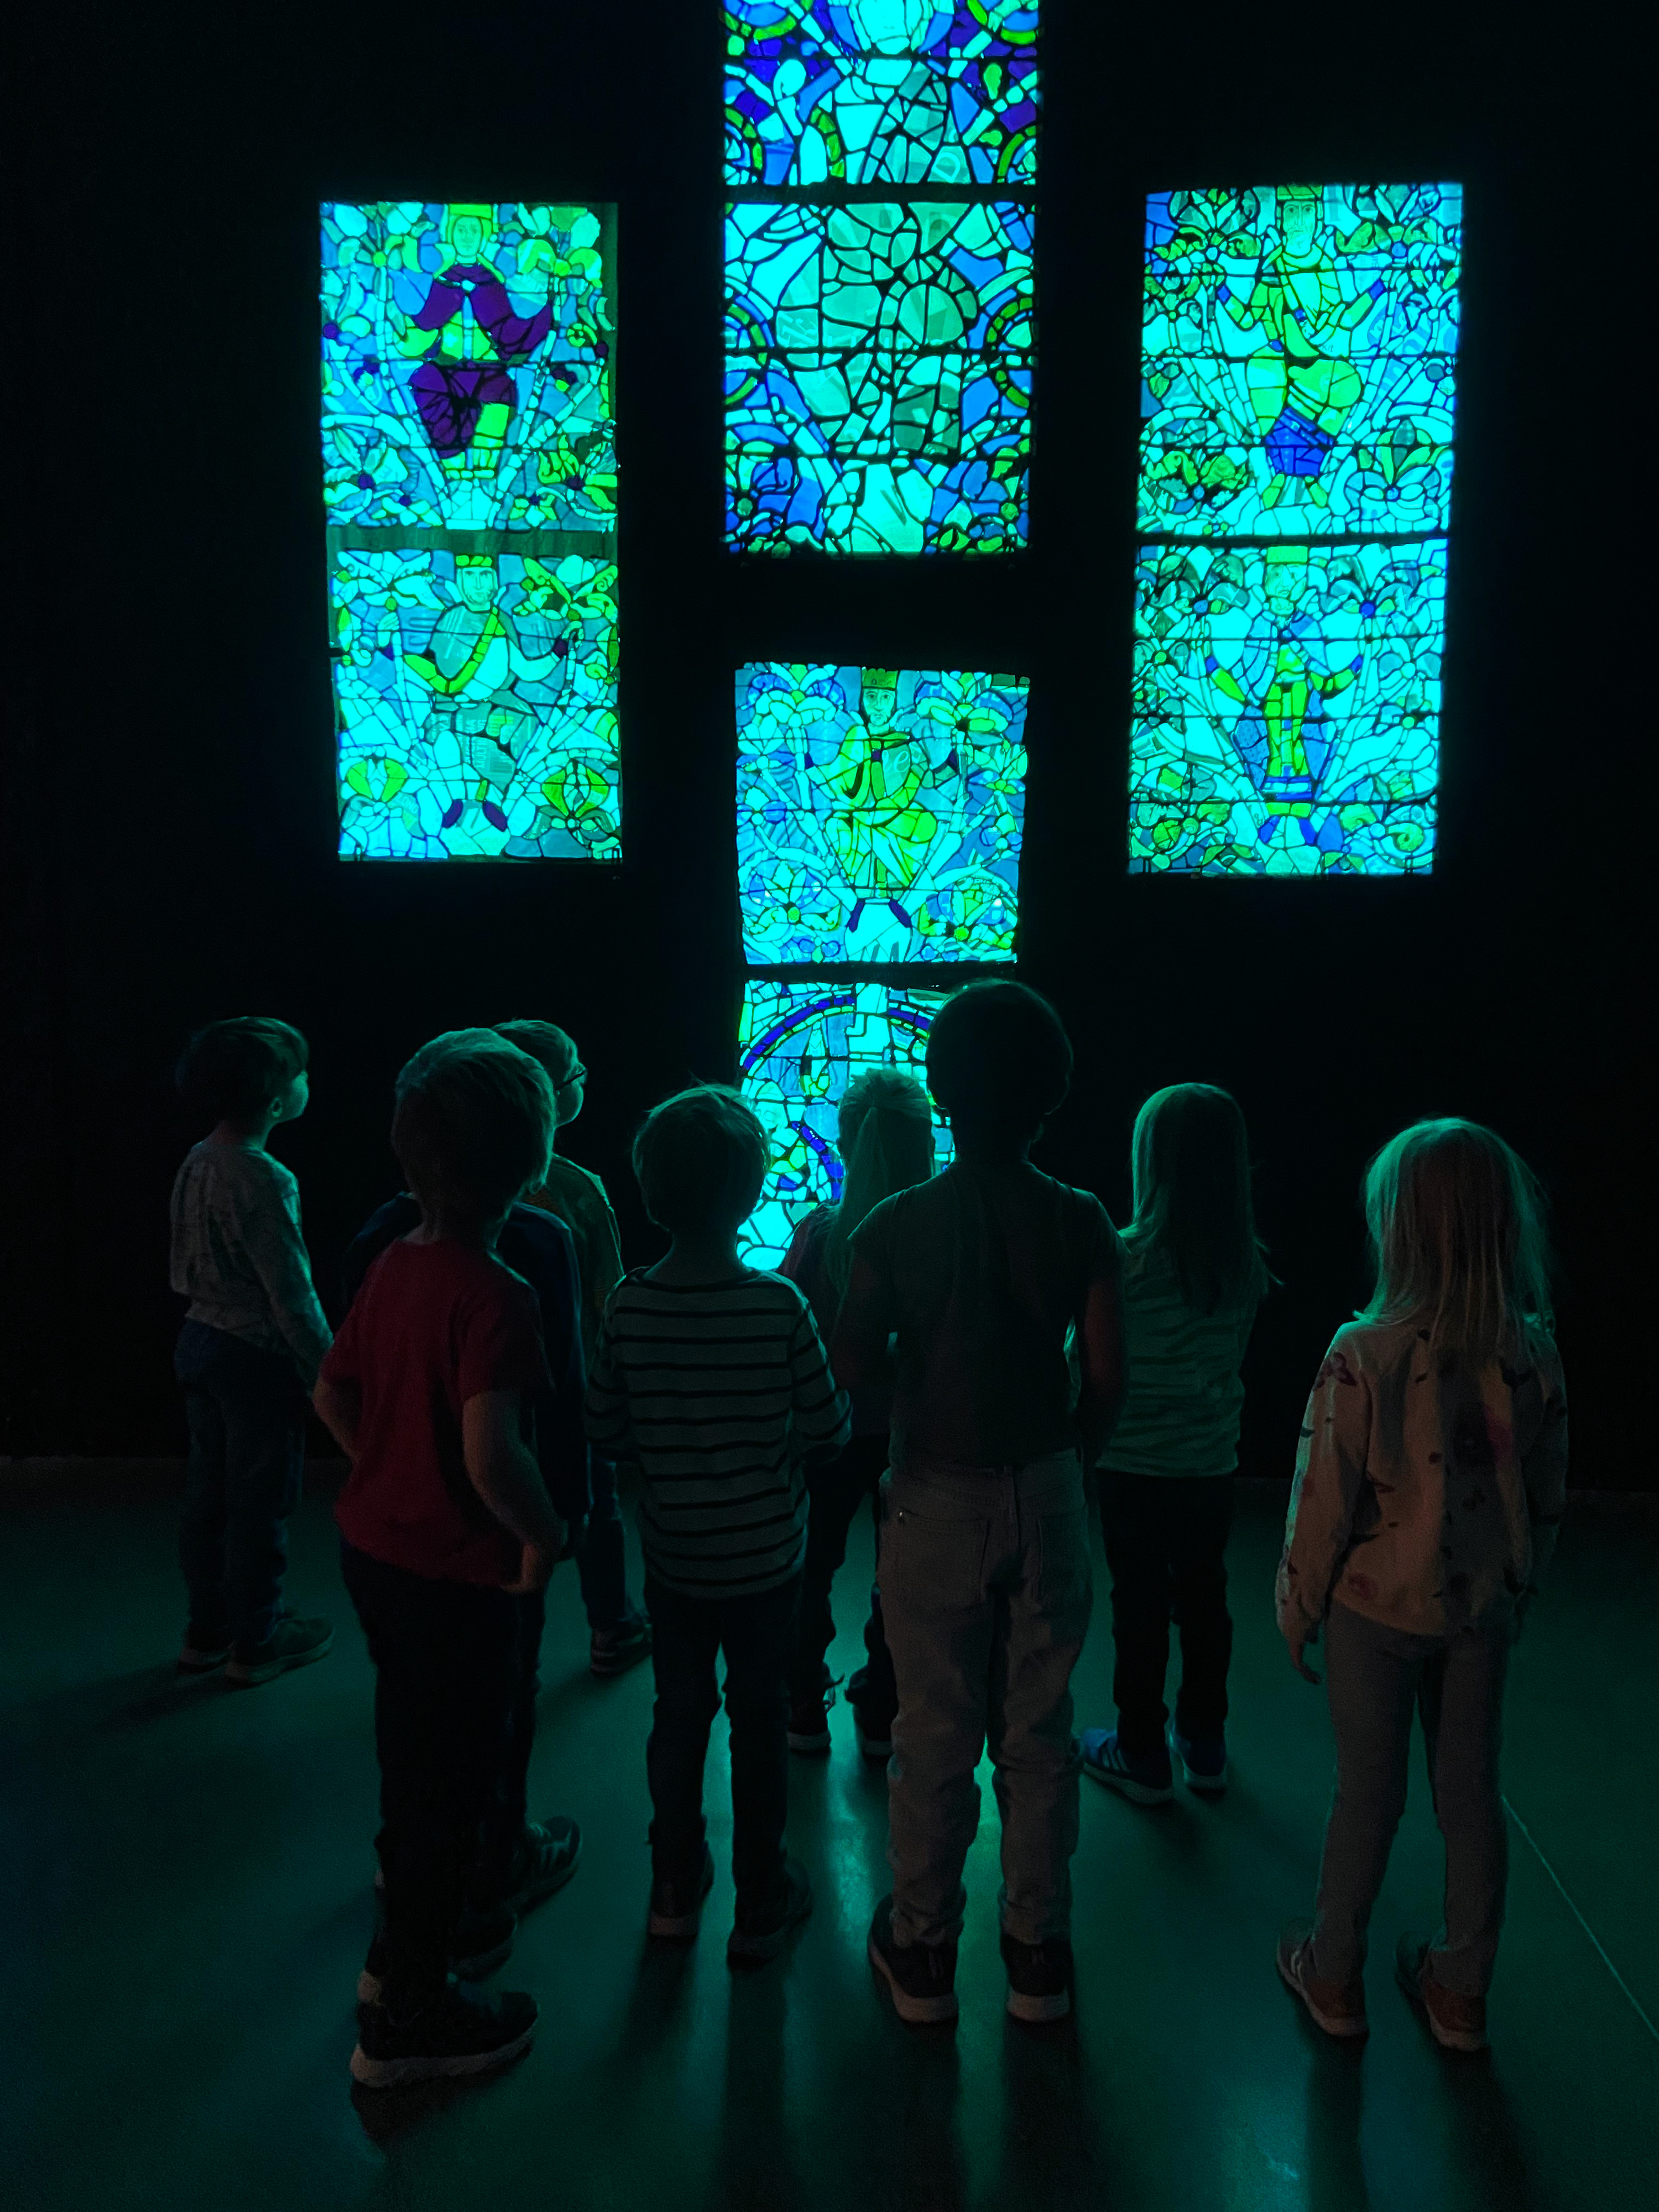 barn i 5-årsåldern står i ett mörkt rum och tittar upp mot ett upplyst konstverk som föreställer ljuslådor med mosaik med olika motiv